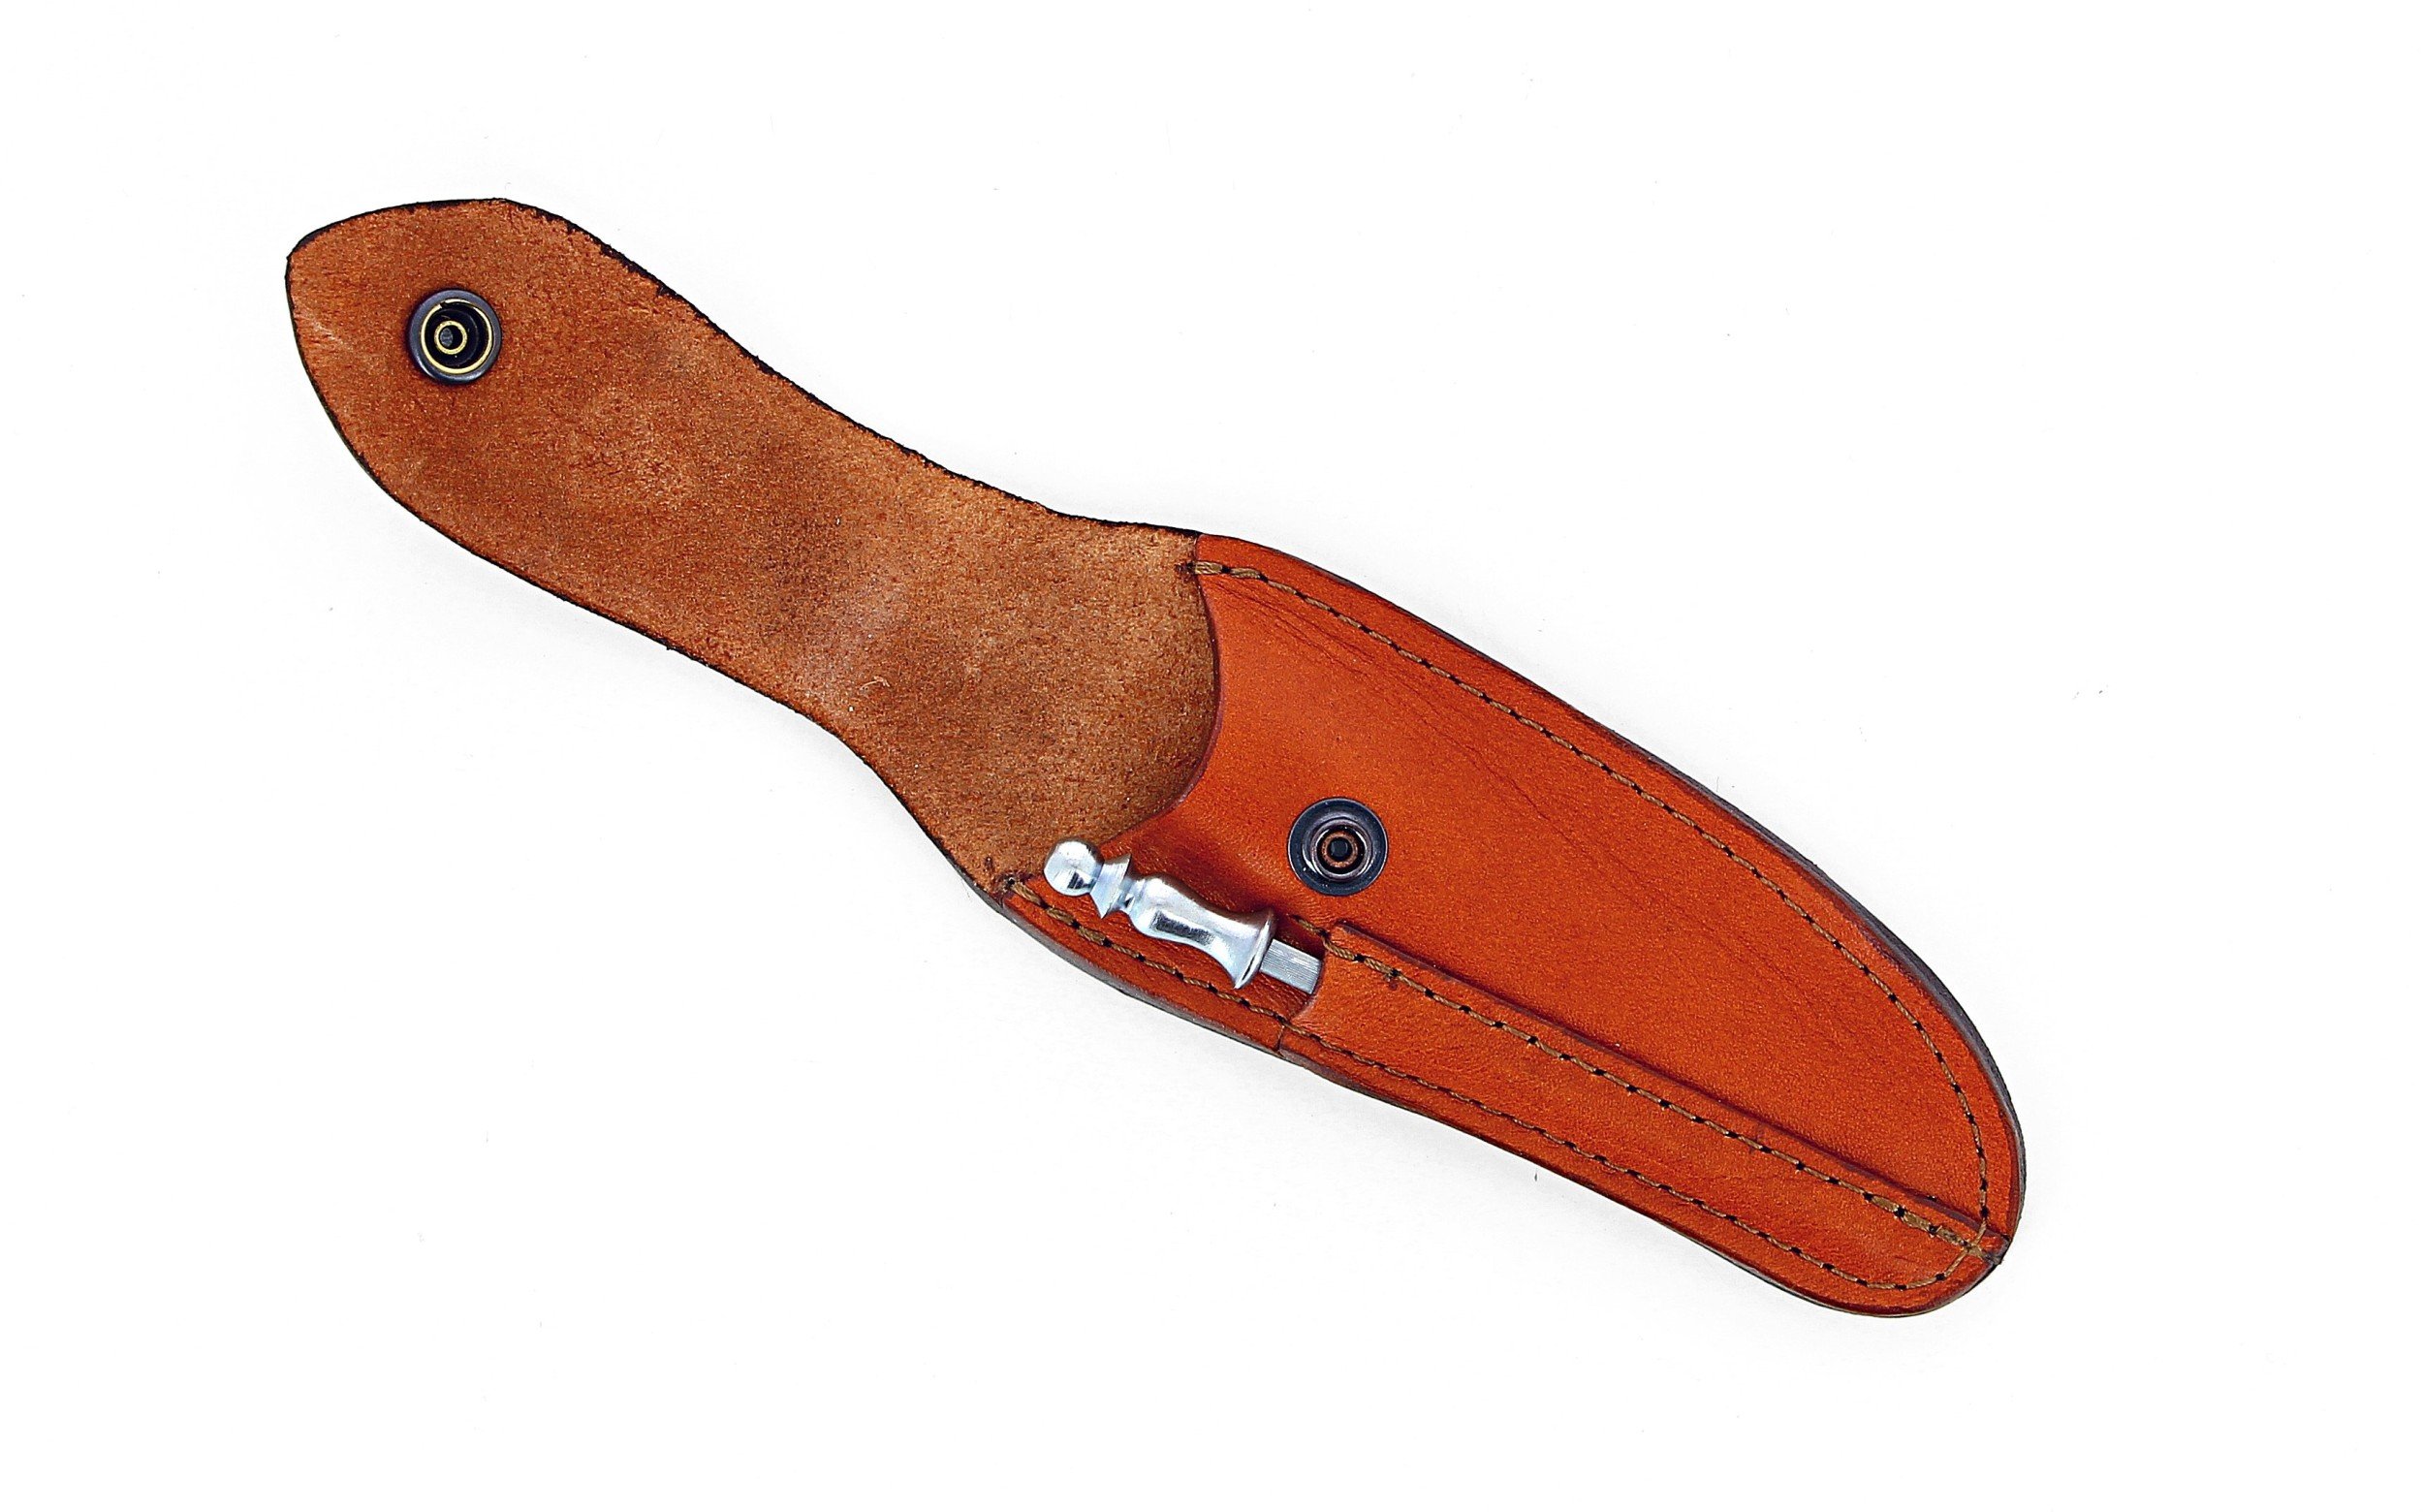 Etui en cuir marron clair avec fusil tête inox, pour couteau Laguiole avec manche de 11 cm et 12 cm